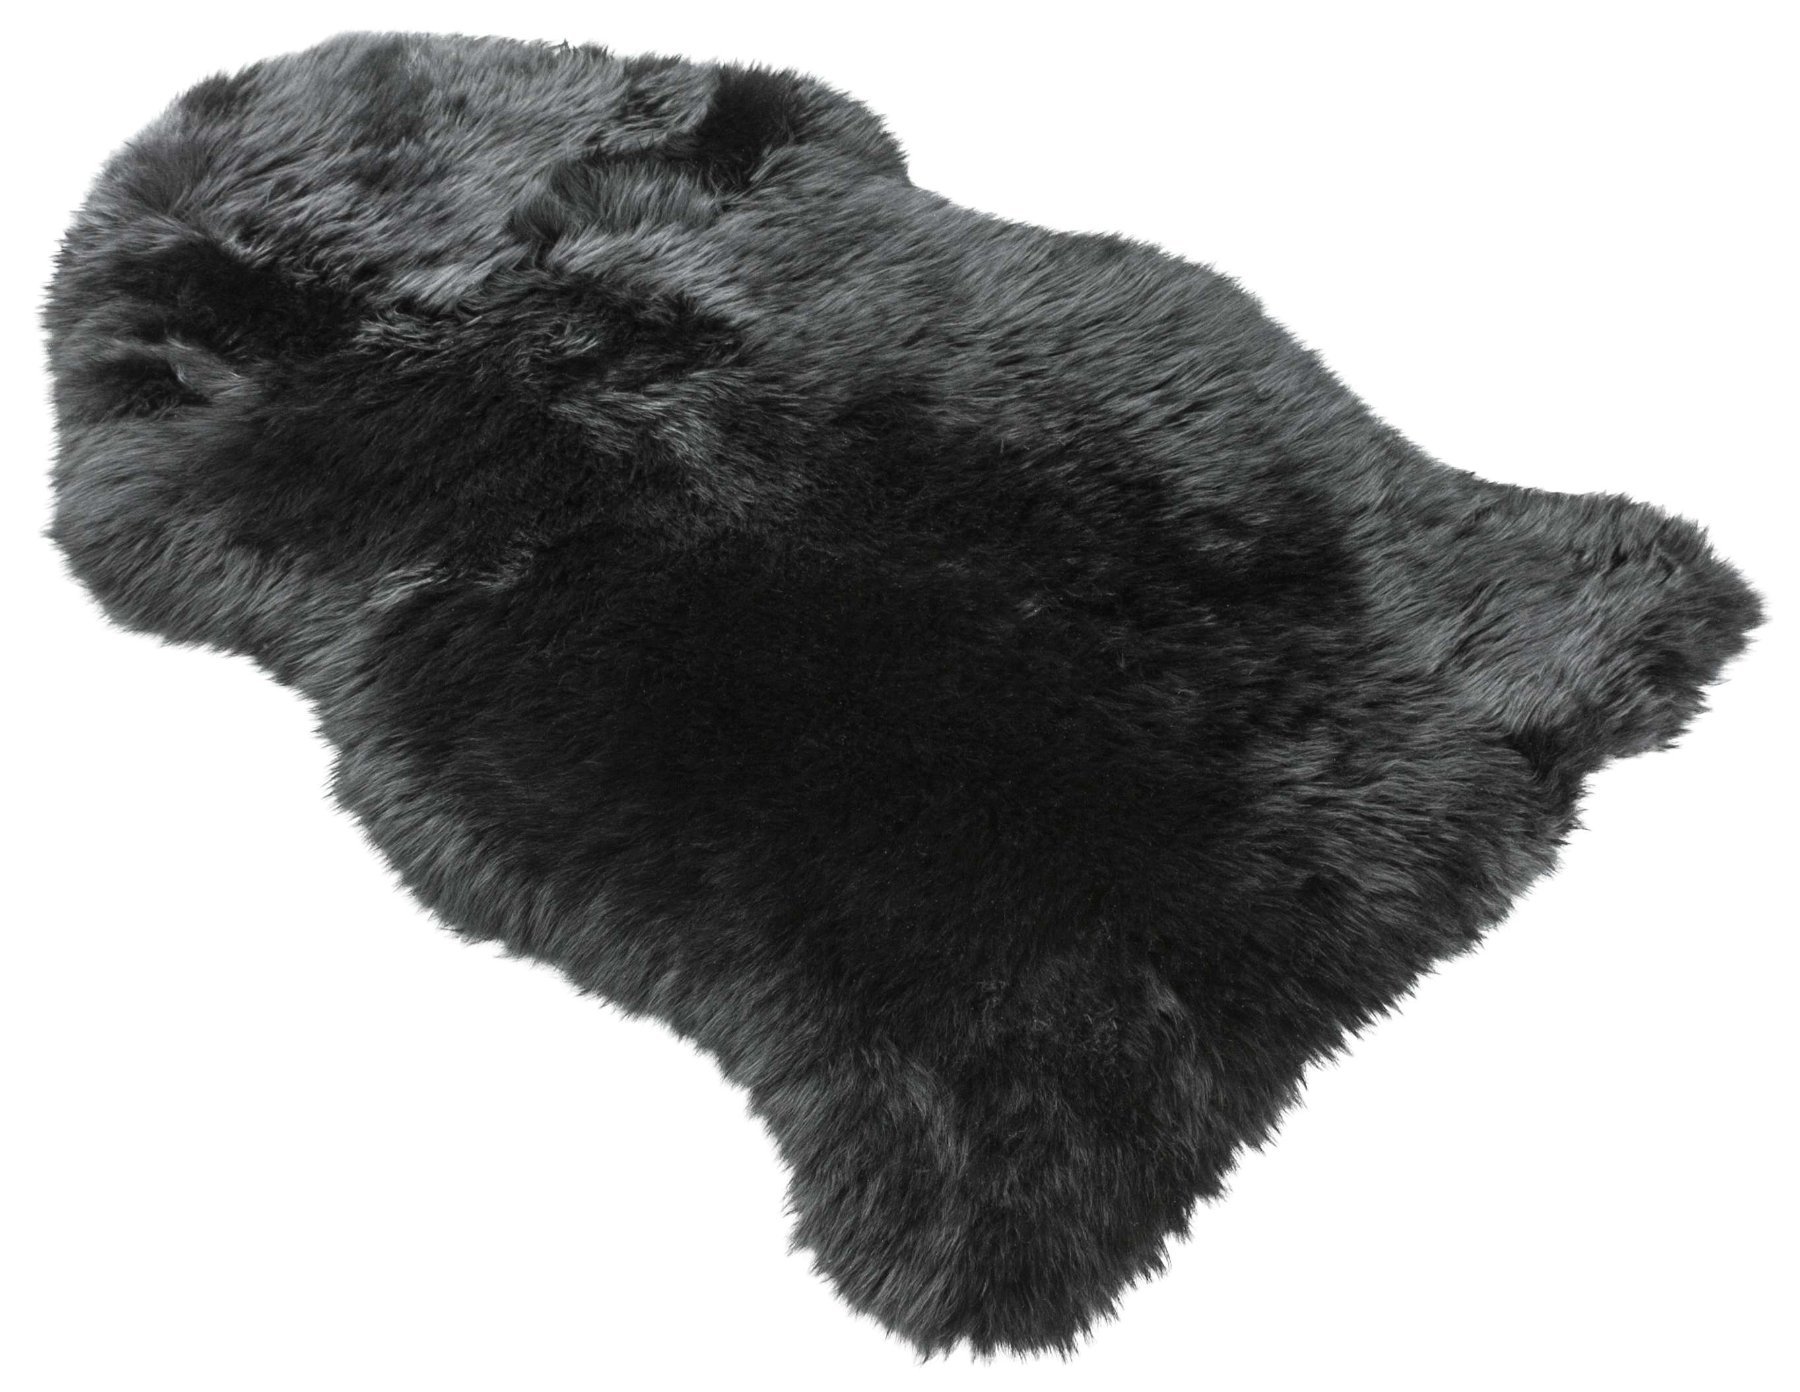 Lammfell Teppich Blake schwarz 80-90cm aus 100% natürlichem Lammfell, Wollhöhe 50mm, ideal im Wohn- & Schlafzimmer